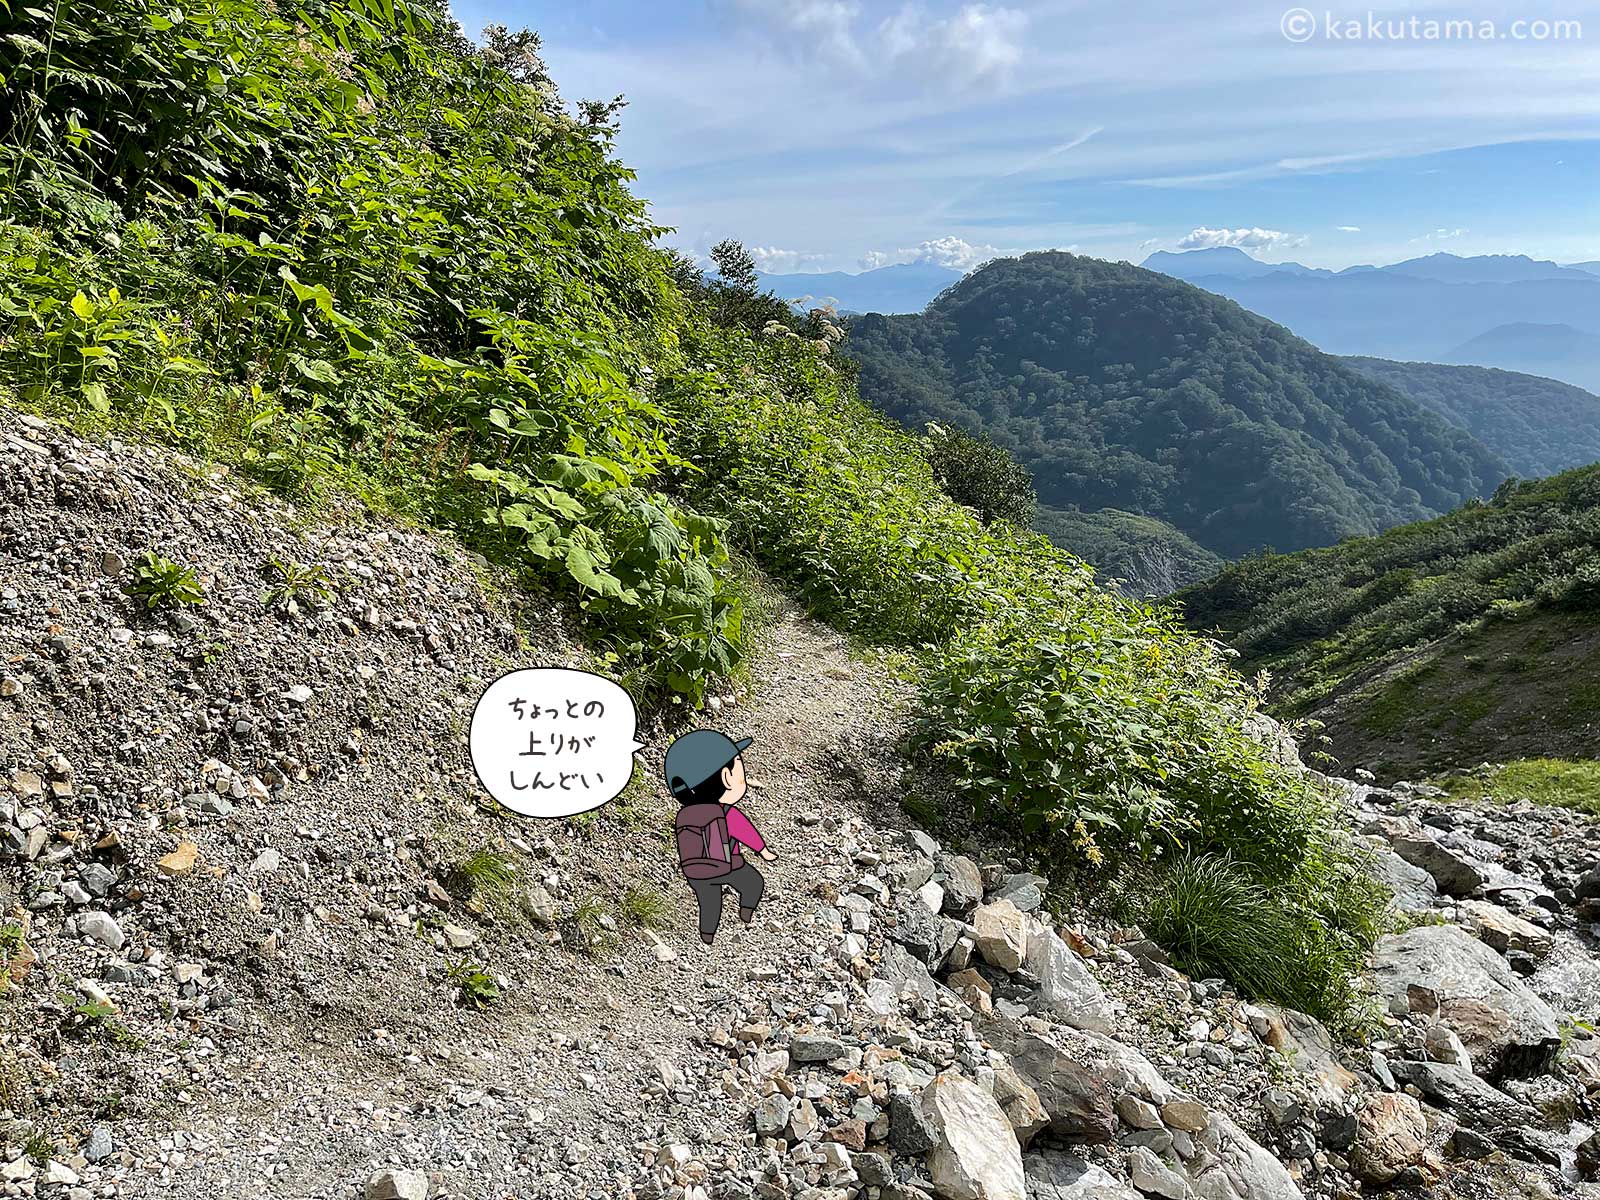 白馬鑓温泉から登山道に沿って下山していく登山者のイラストと写真